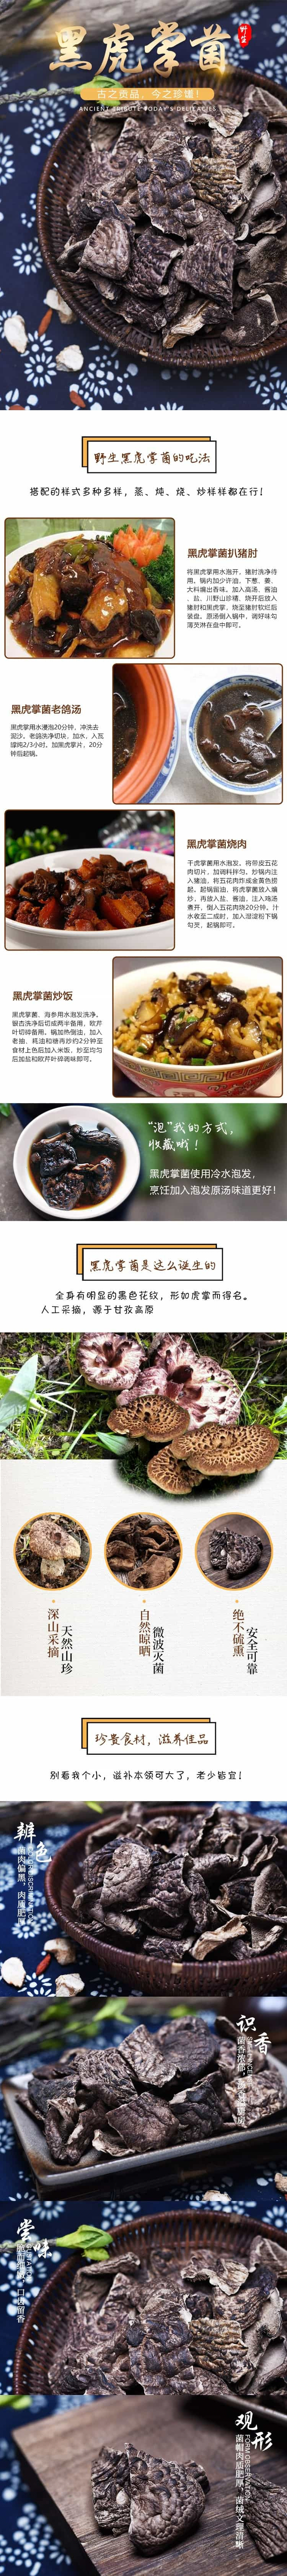  川野 黑虎掌菌 野生菌干货营养菌菇煲汤食材100g